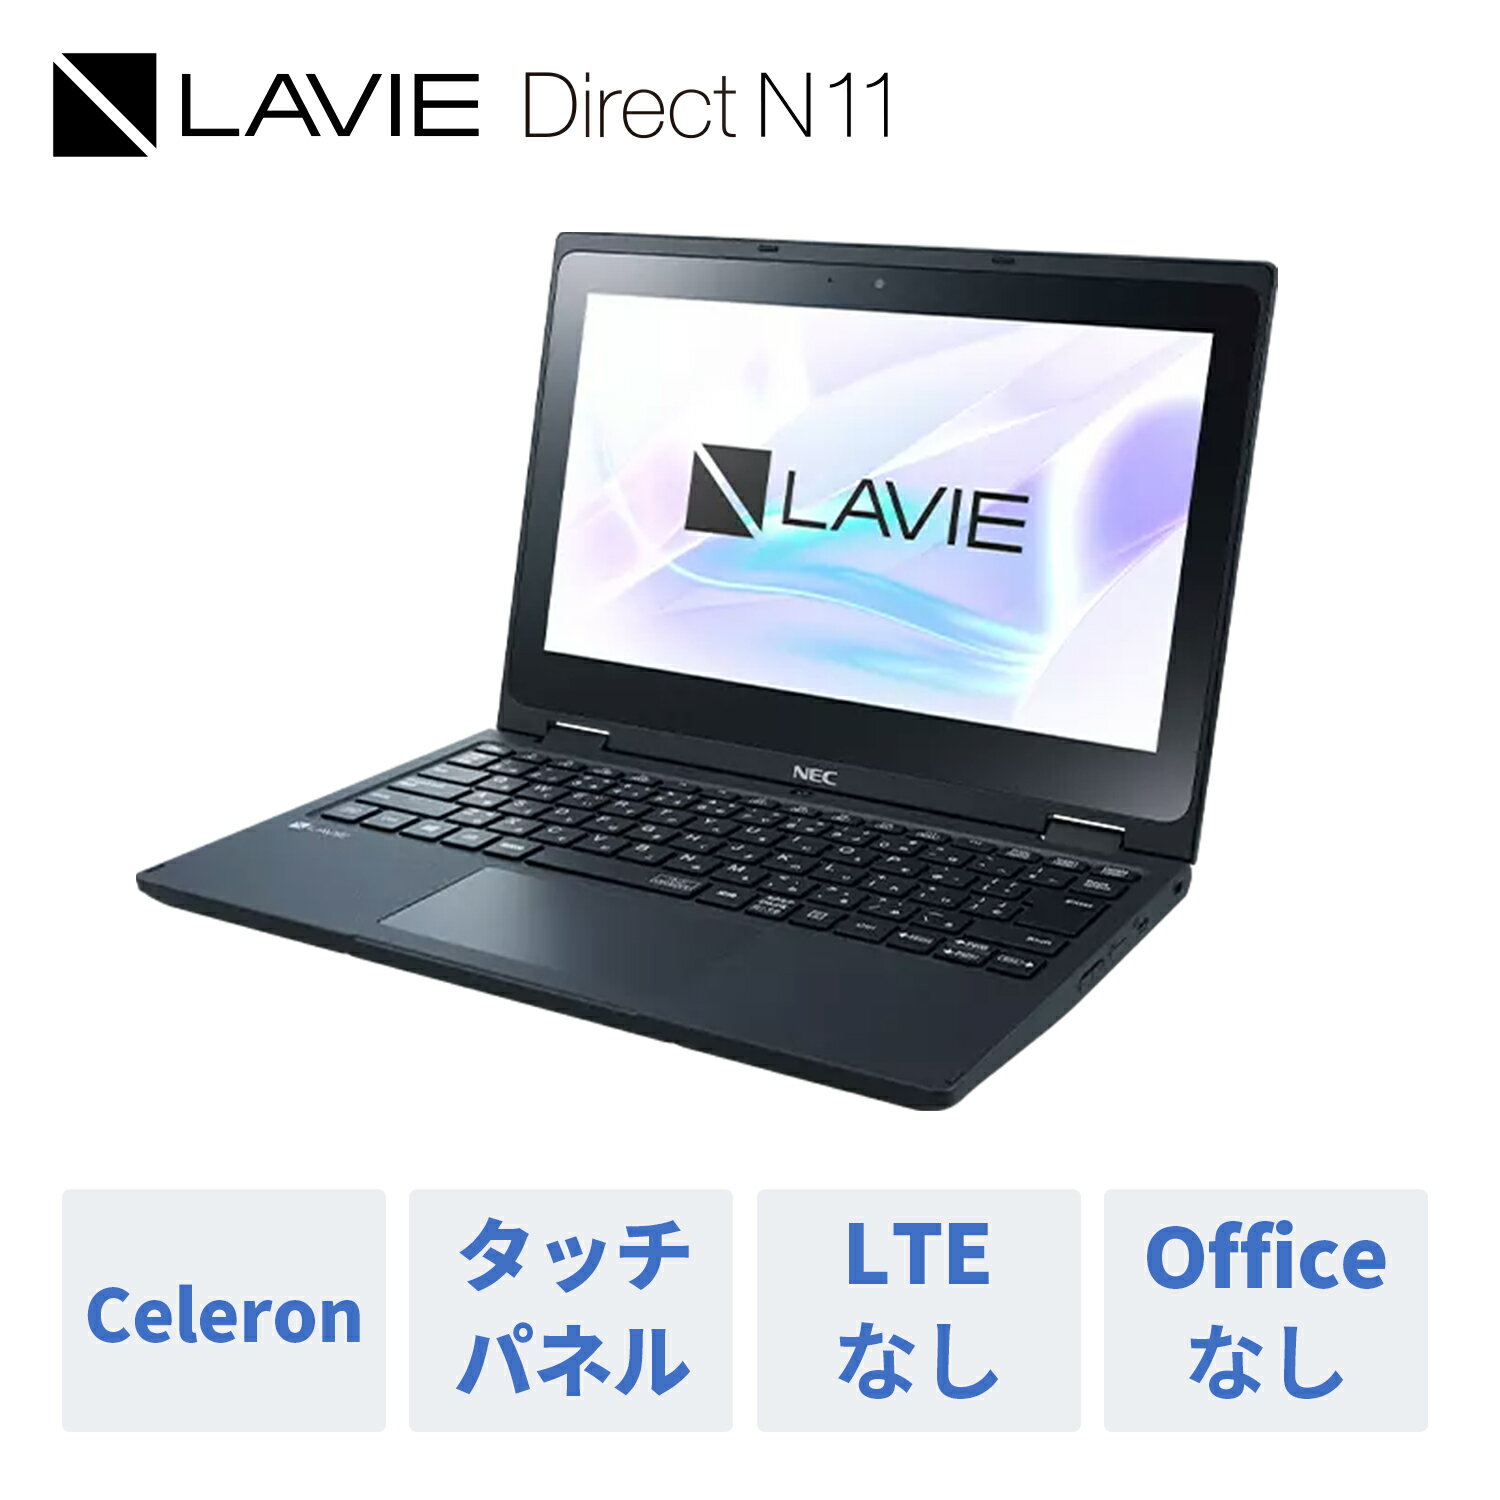 【2,000円OFFクーポン】【WEB限定モデル】NEC ノートパソコン 新品 officeなし LAVIE Direct N11 11.6インチ Windows 10 Pro Celeron メモリ 4GB タッチパネル 1年保証 送料無料